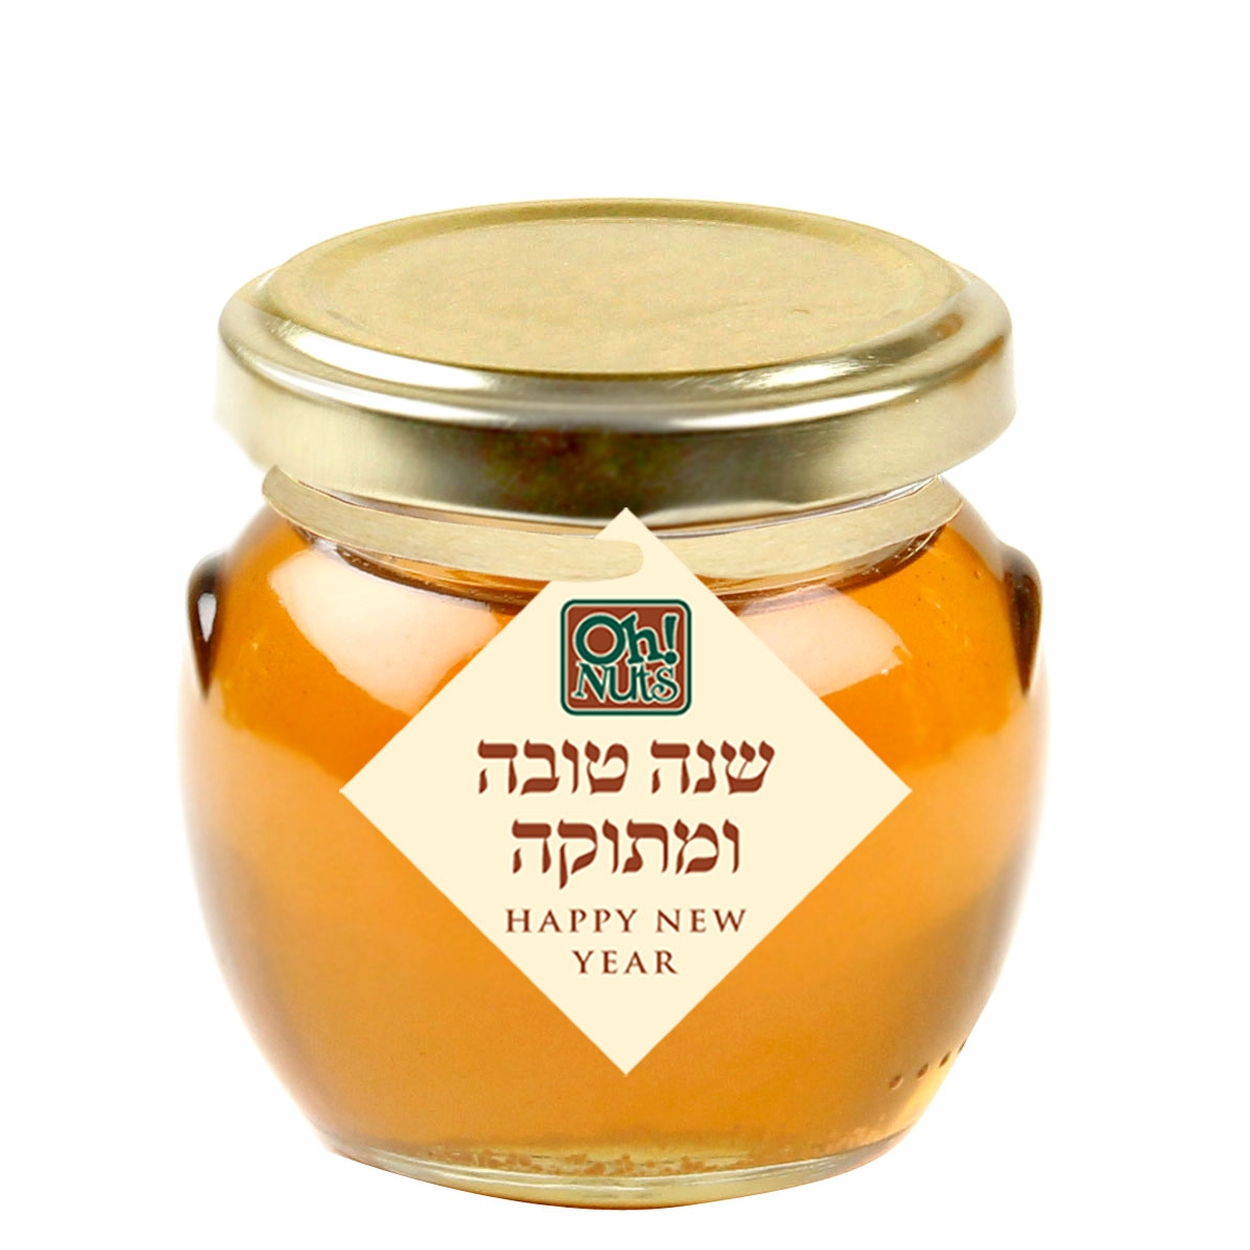 Rosh Hashanah Glass Honey Jar, 3 oz. • Oh! Nuts®